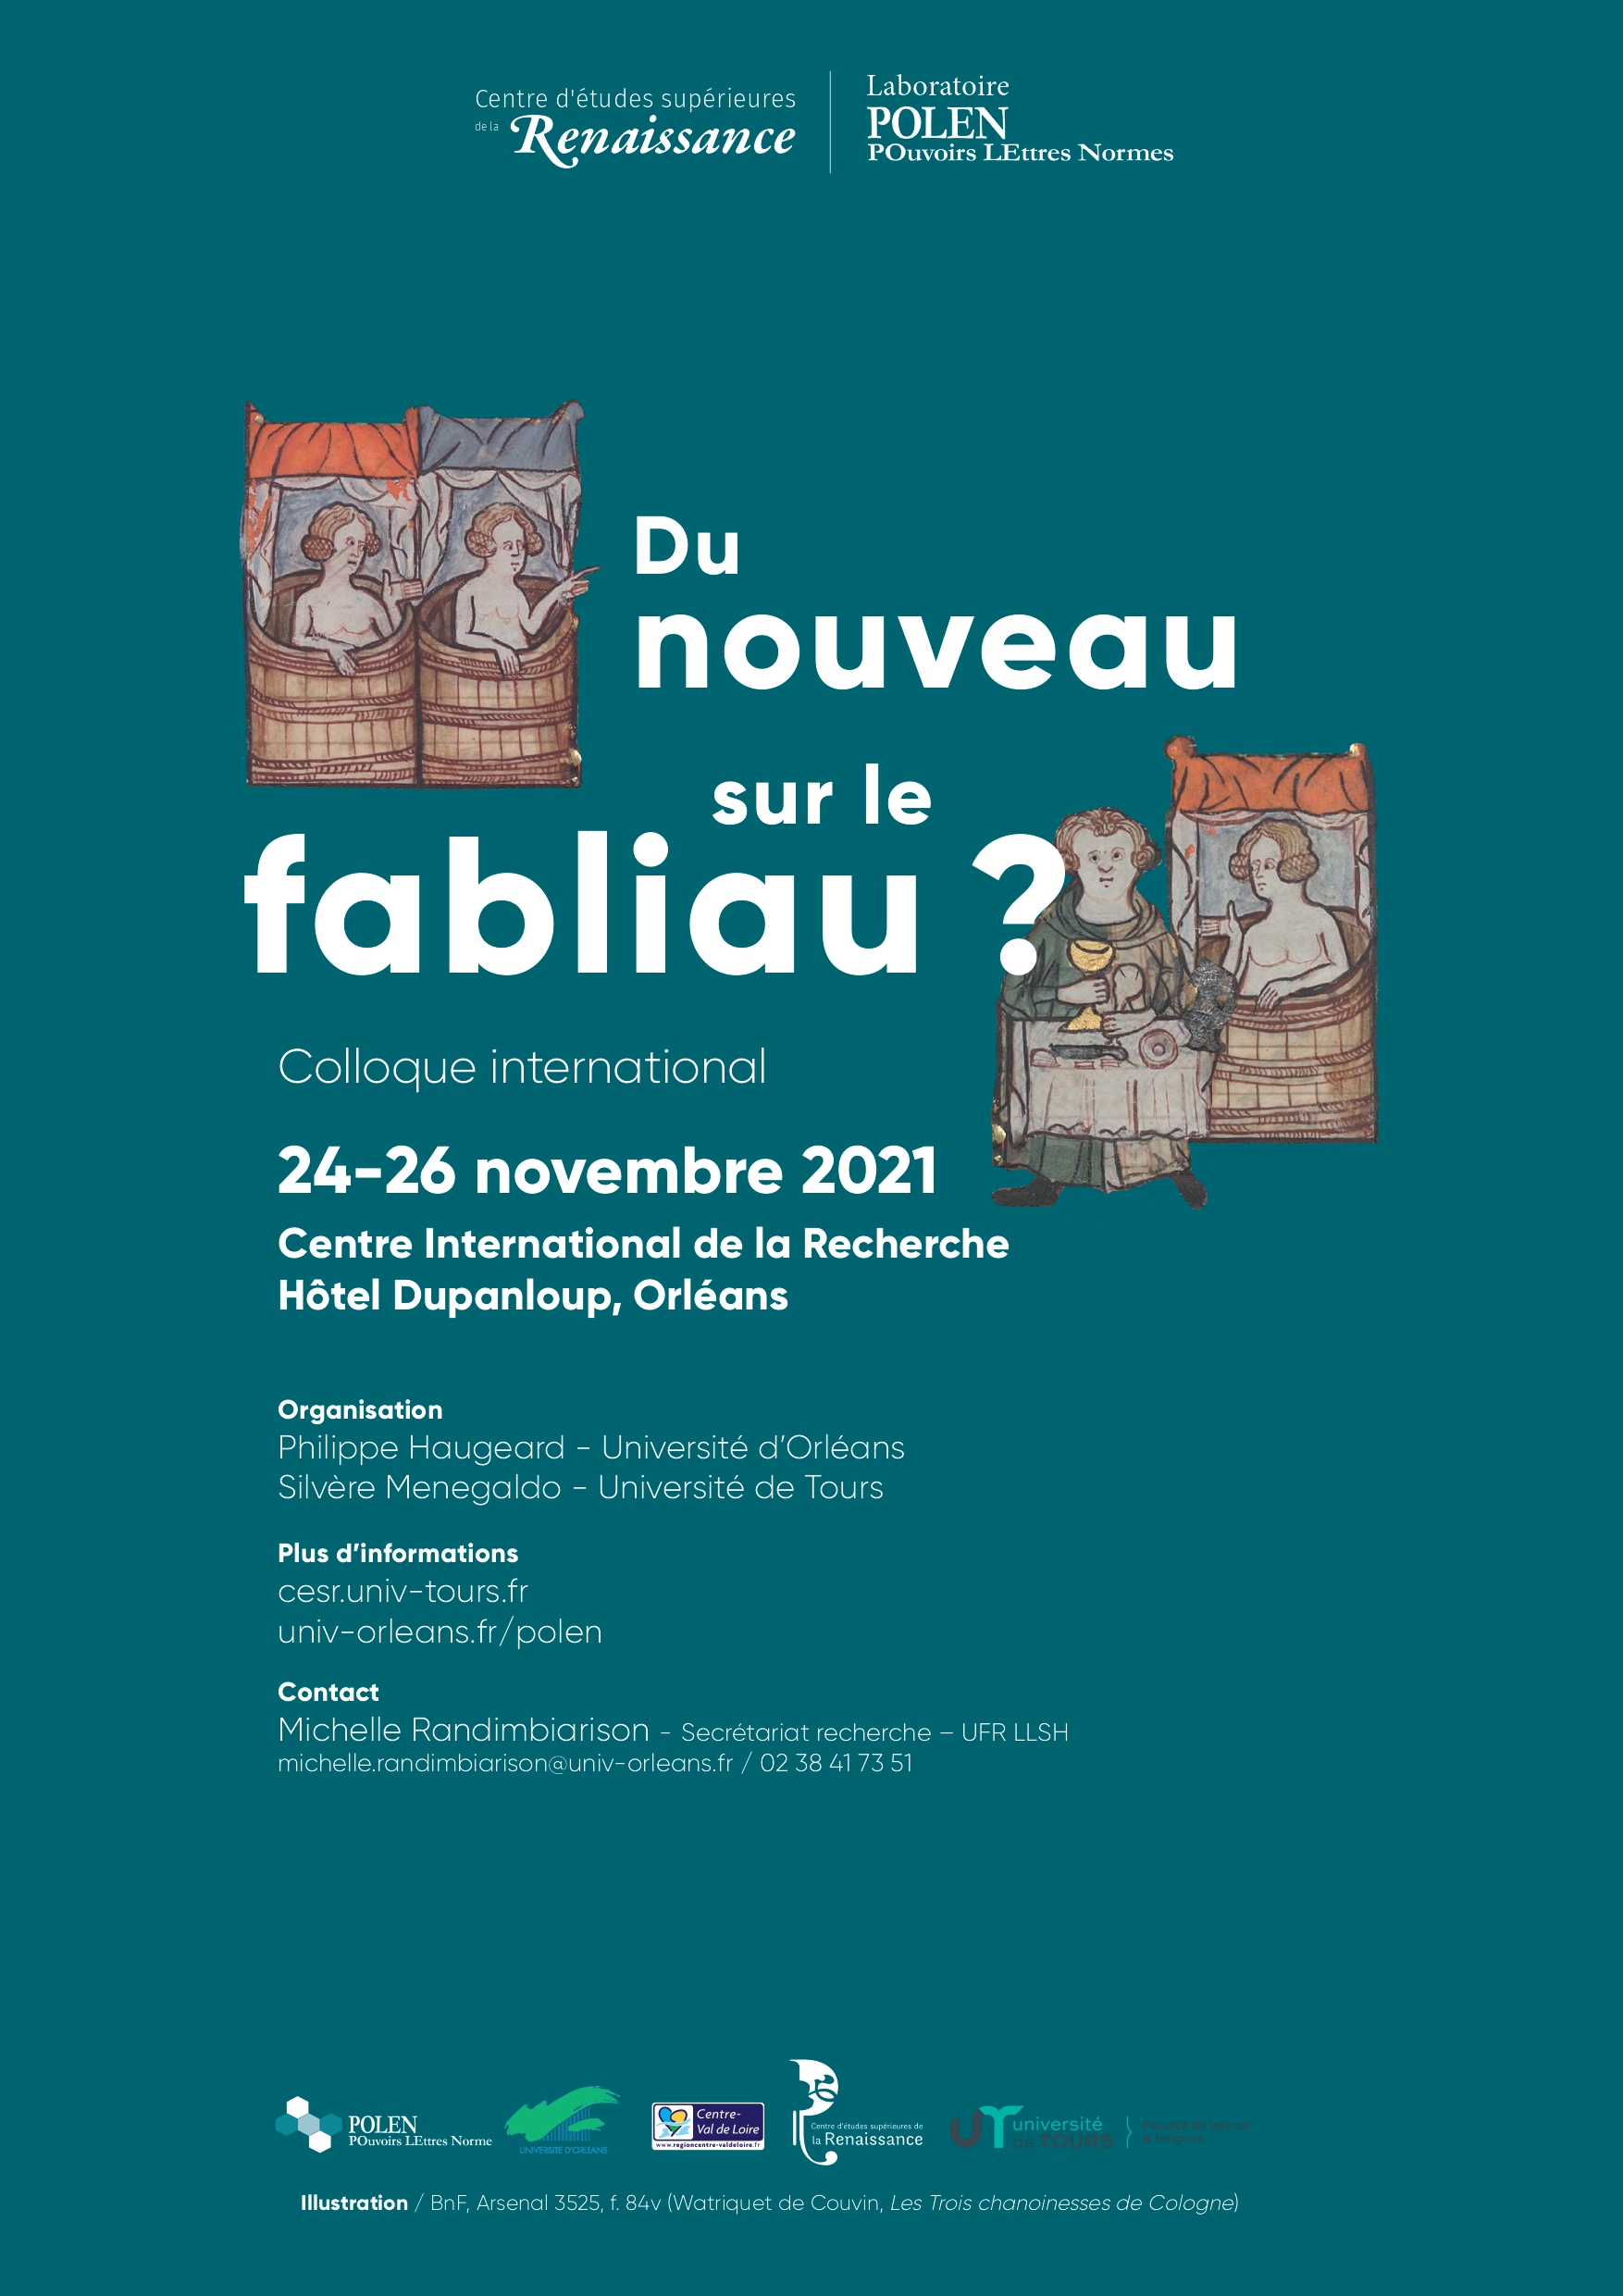 Affiche du colloque "Du nouveau sur le fabliau" qui se tiendra du 24 au 26 novembre 2021 à l'hôtel Dupanloup à Orléans.